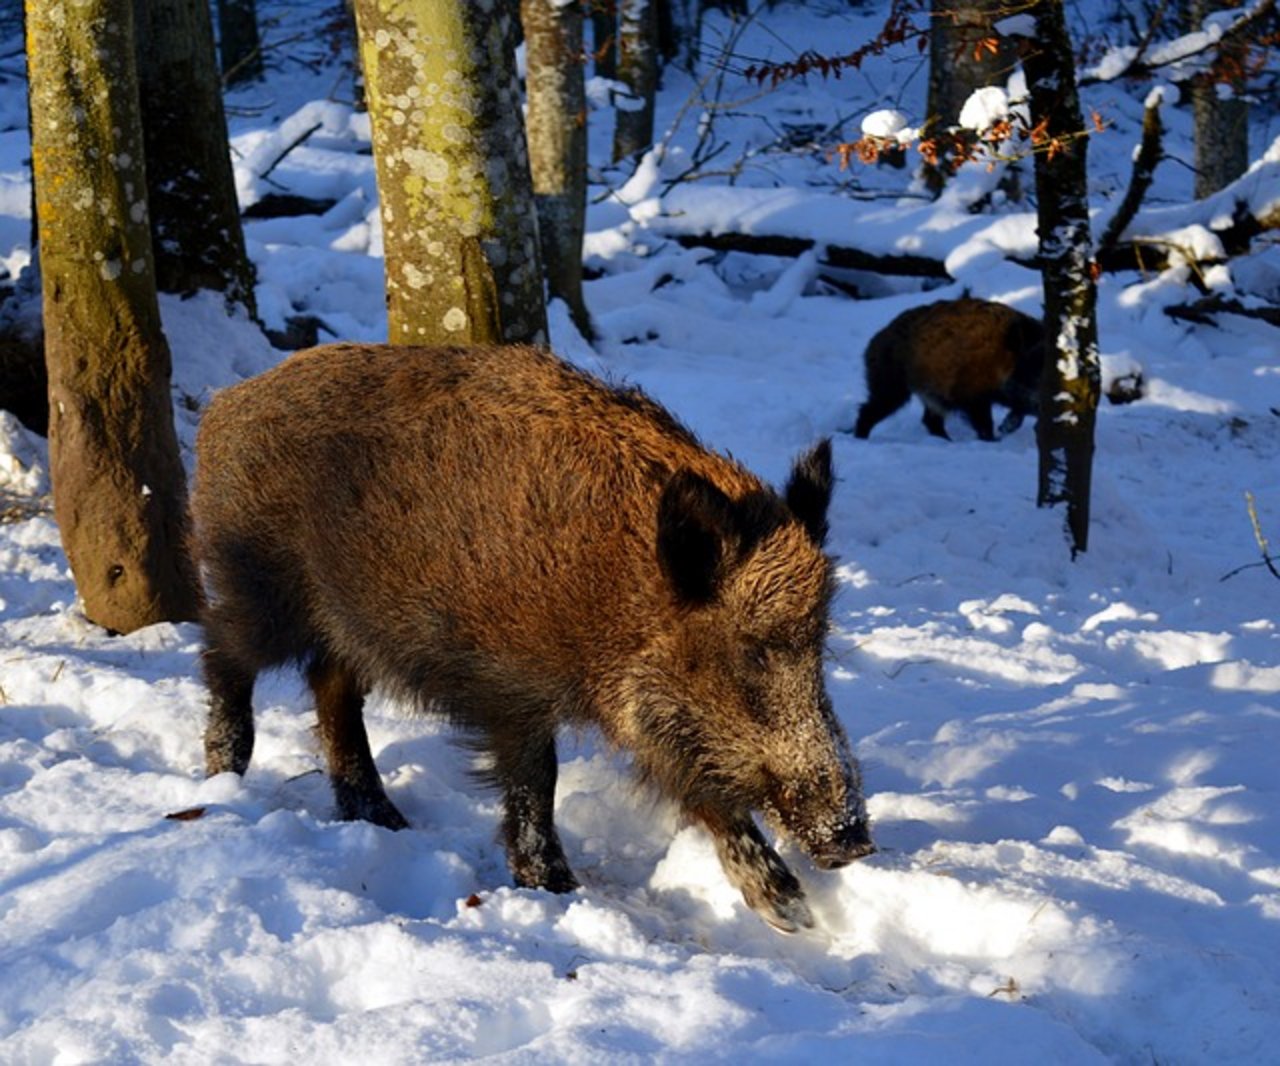 Wildschweine entwickeln immunität gegen die Schweinepest. (Bild pixabay)